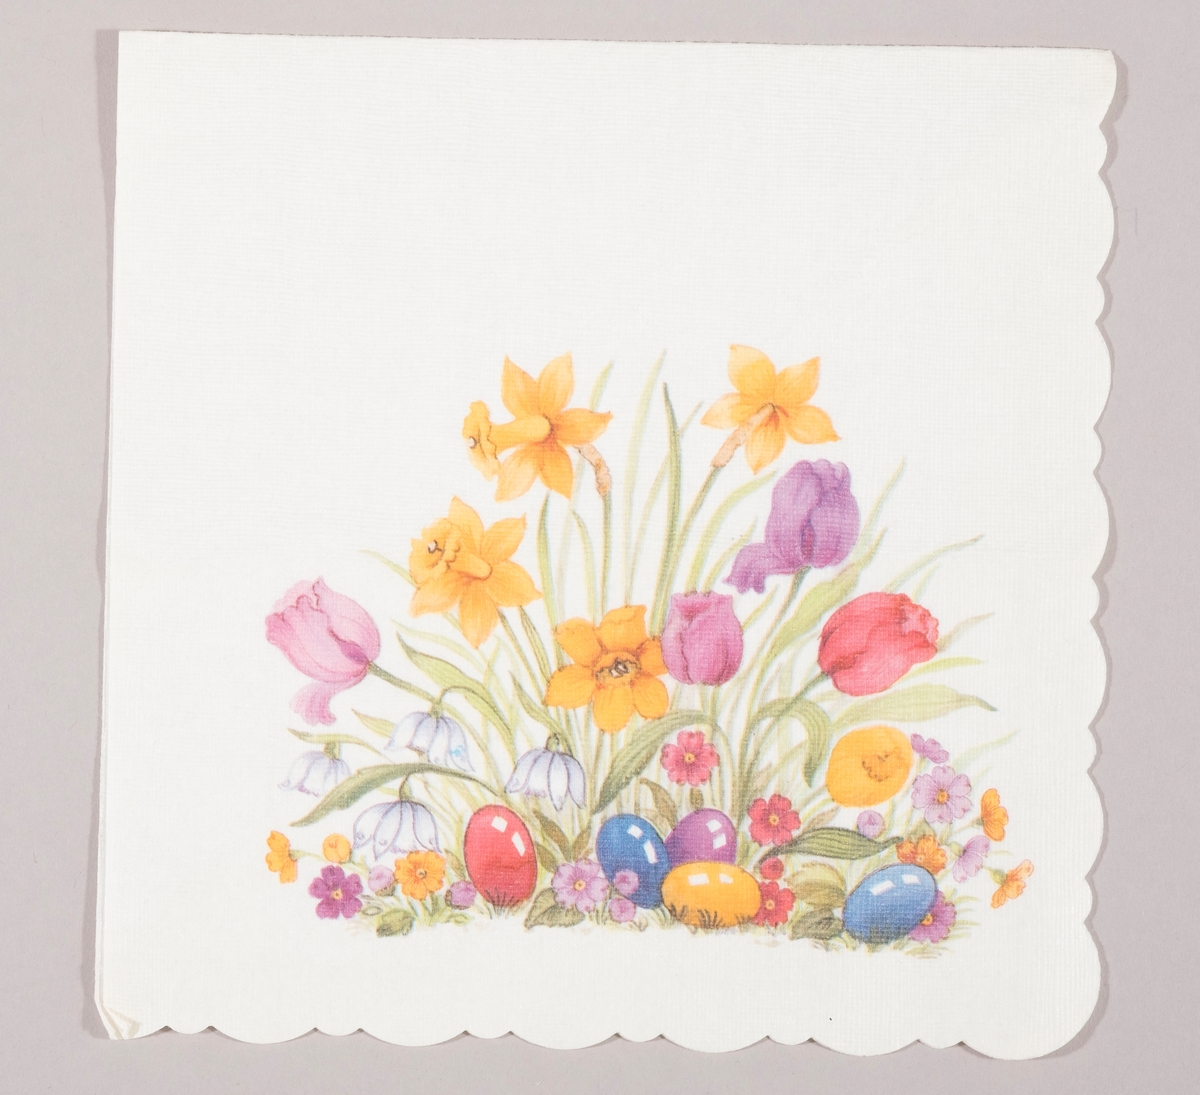 Påskeliljer, tulipaner, snøklokker, små blomster og påskeegg i rød, blå, lilla og gule farger.